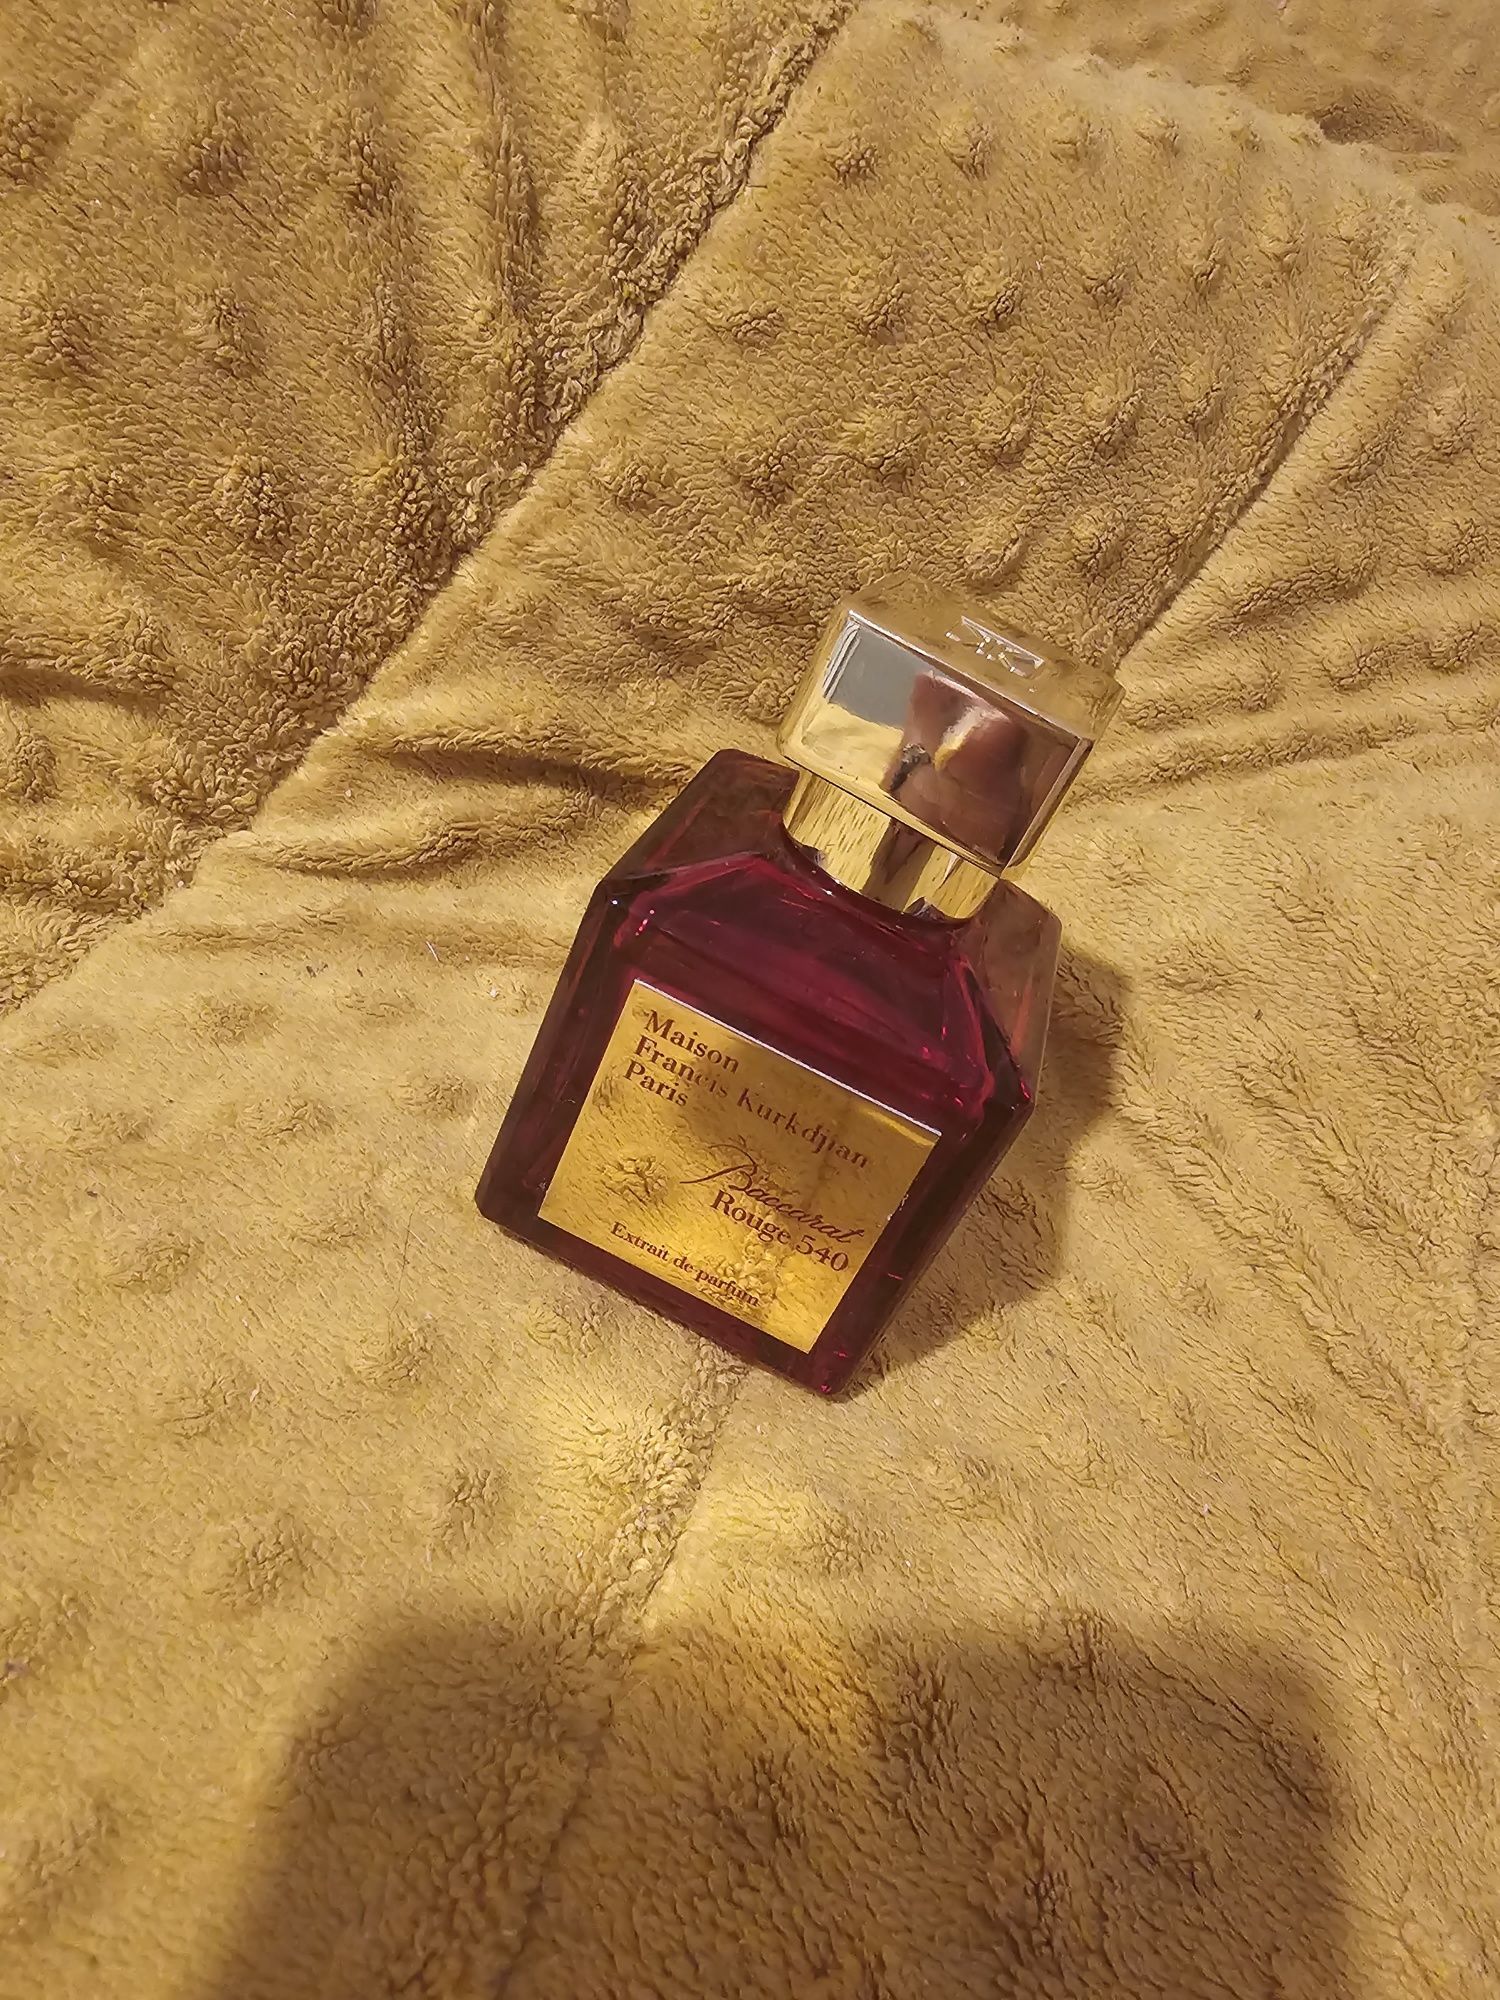 Bacarat rouge 540 nowe perfumy